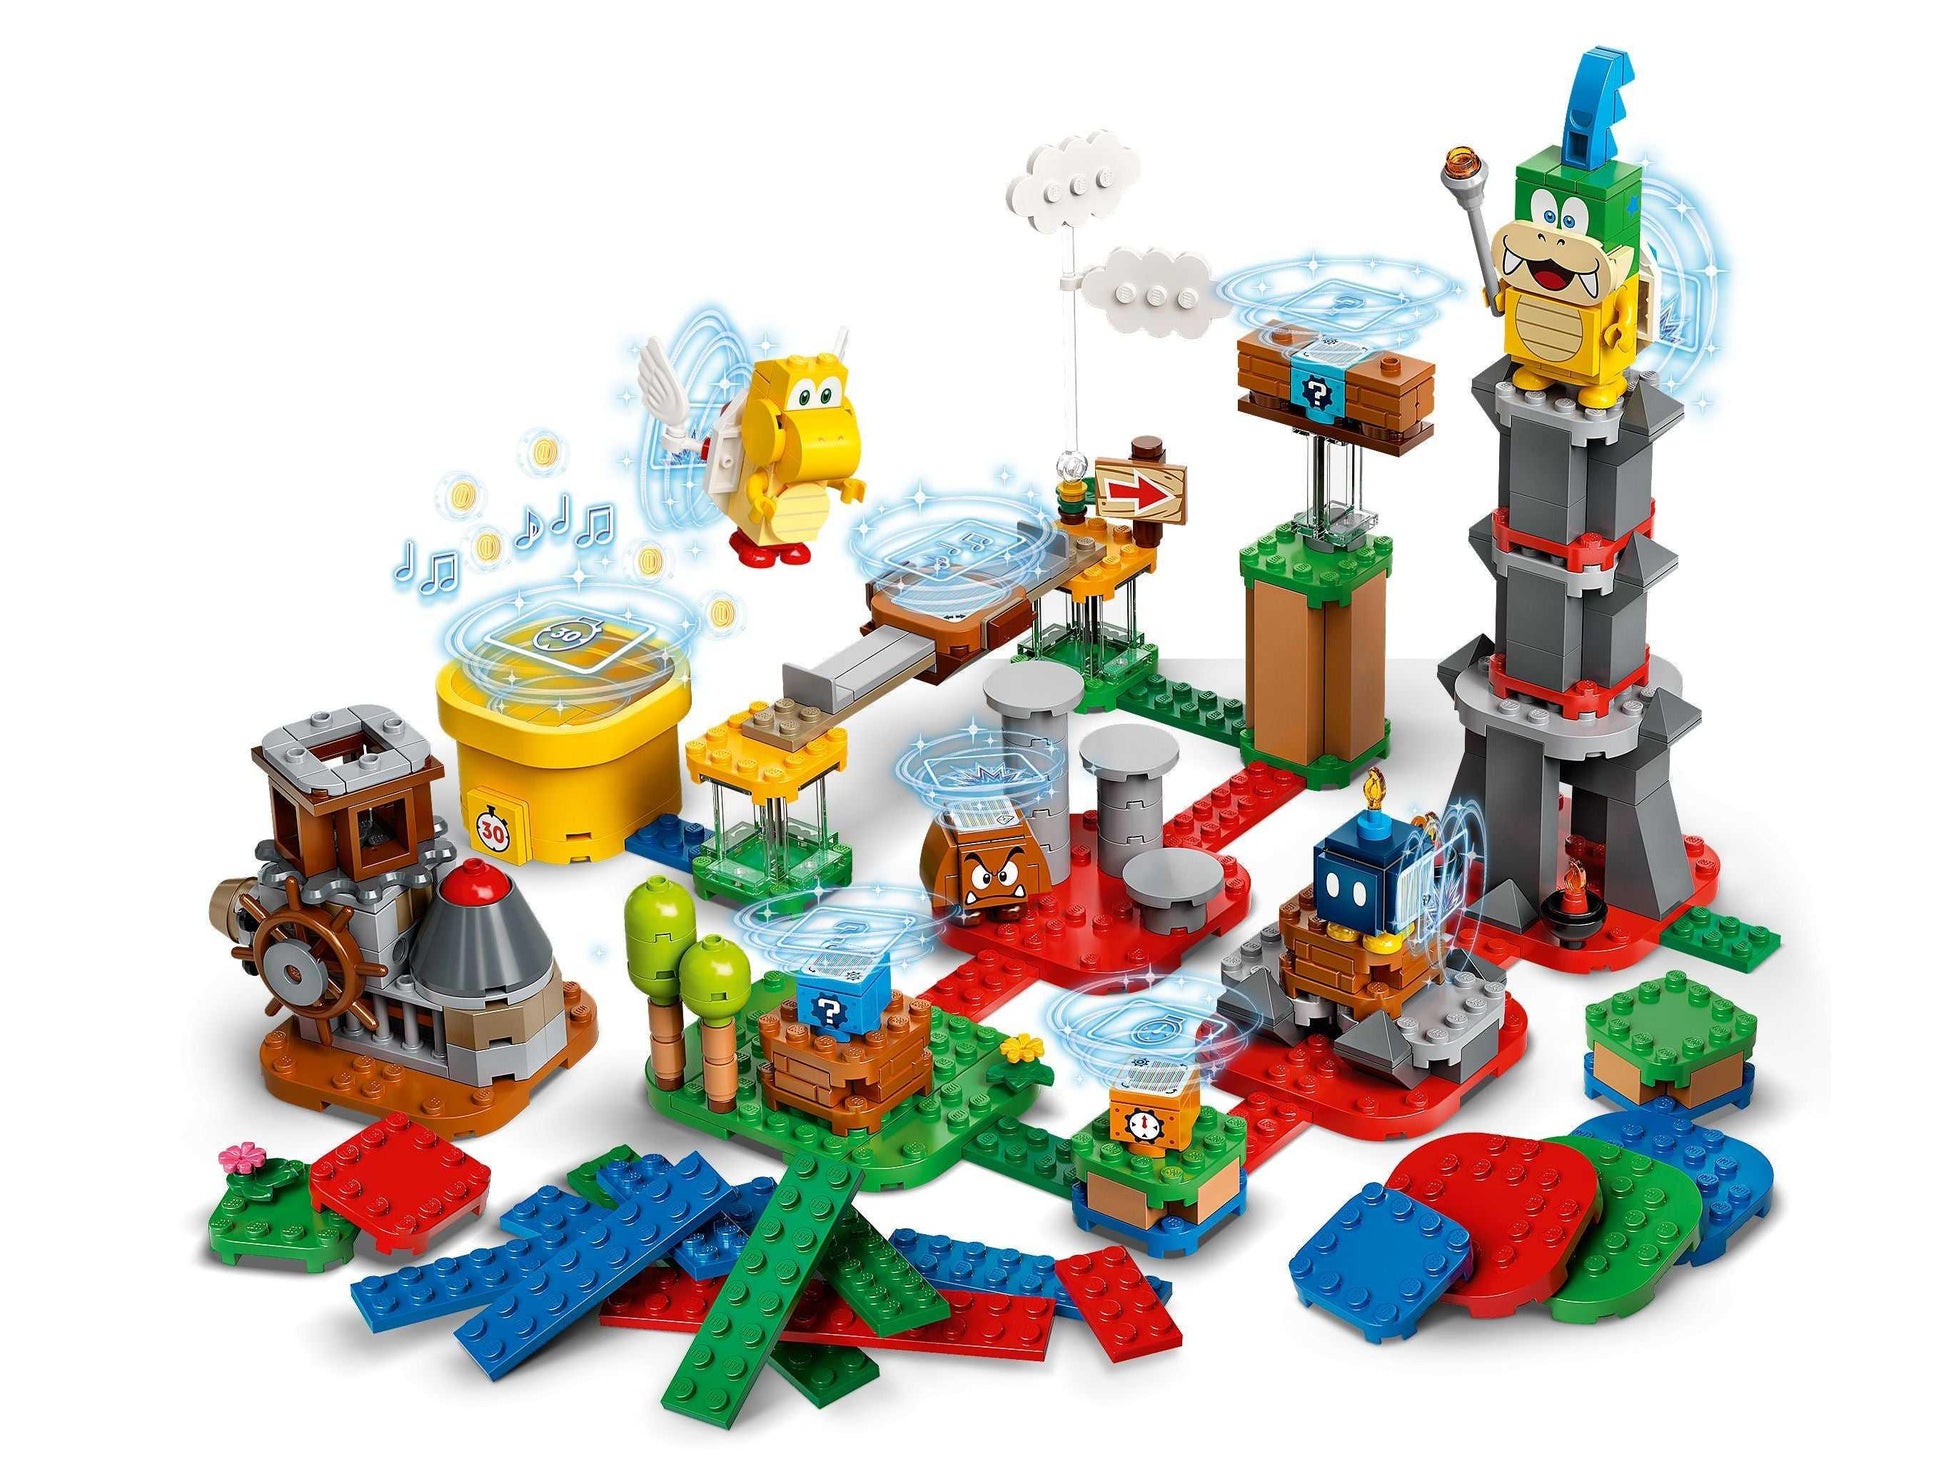 LEGO® Super Mario 71380 Baumeister-Set für eigene Abenteuer - 366 Teile - Peer Online Shop